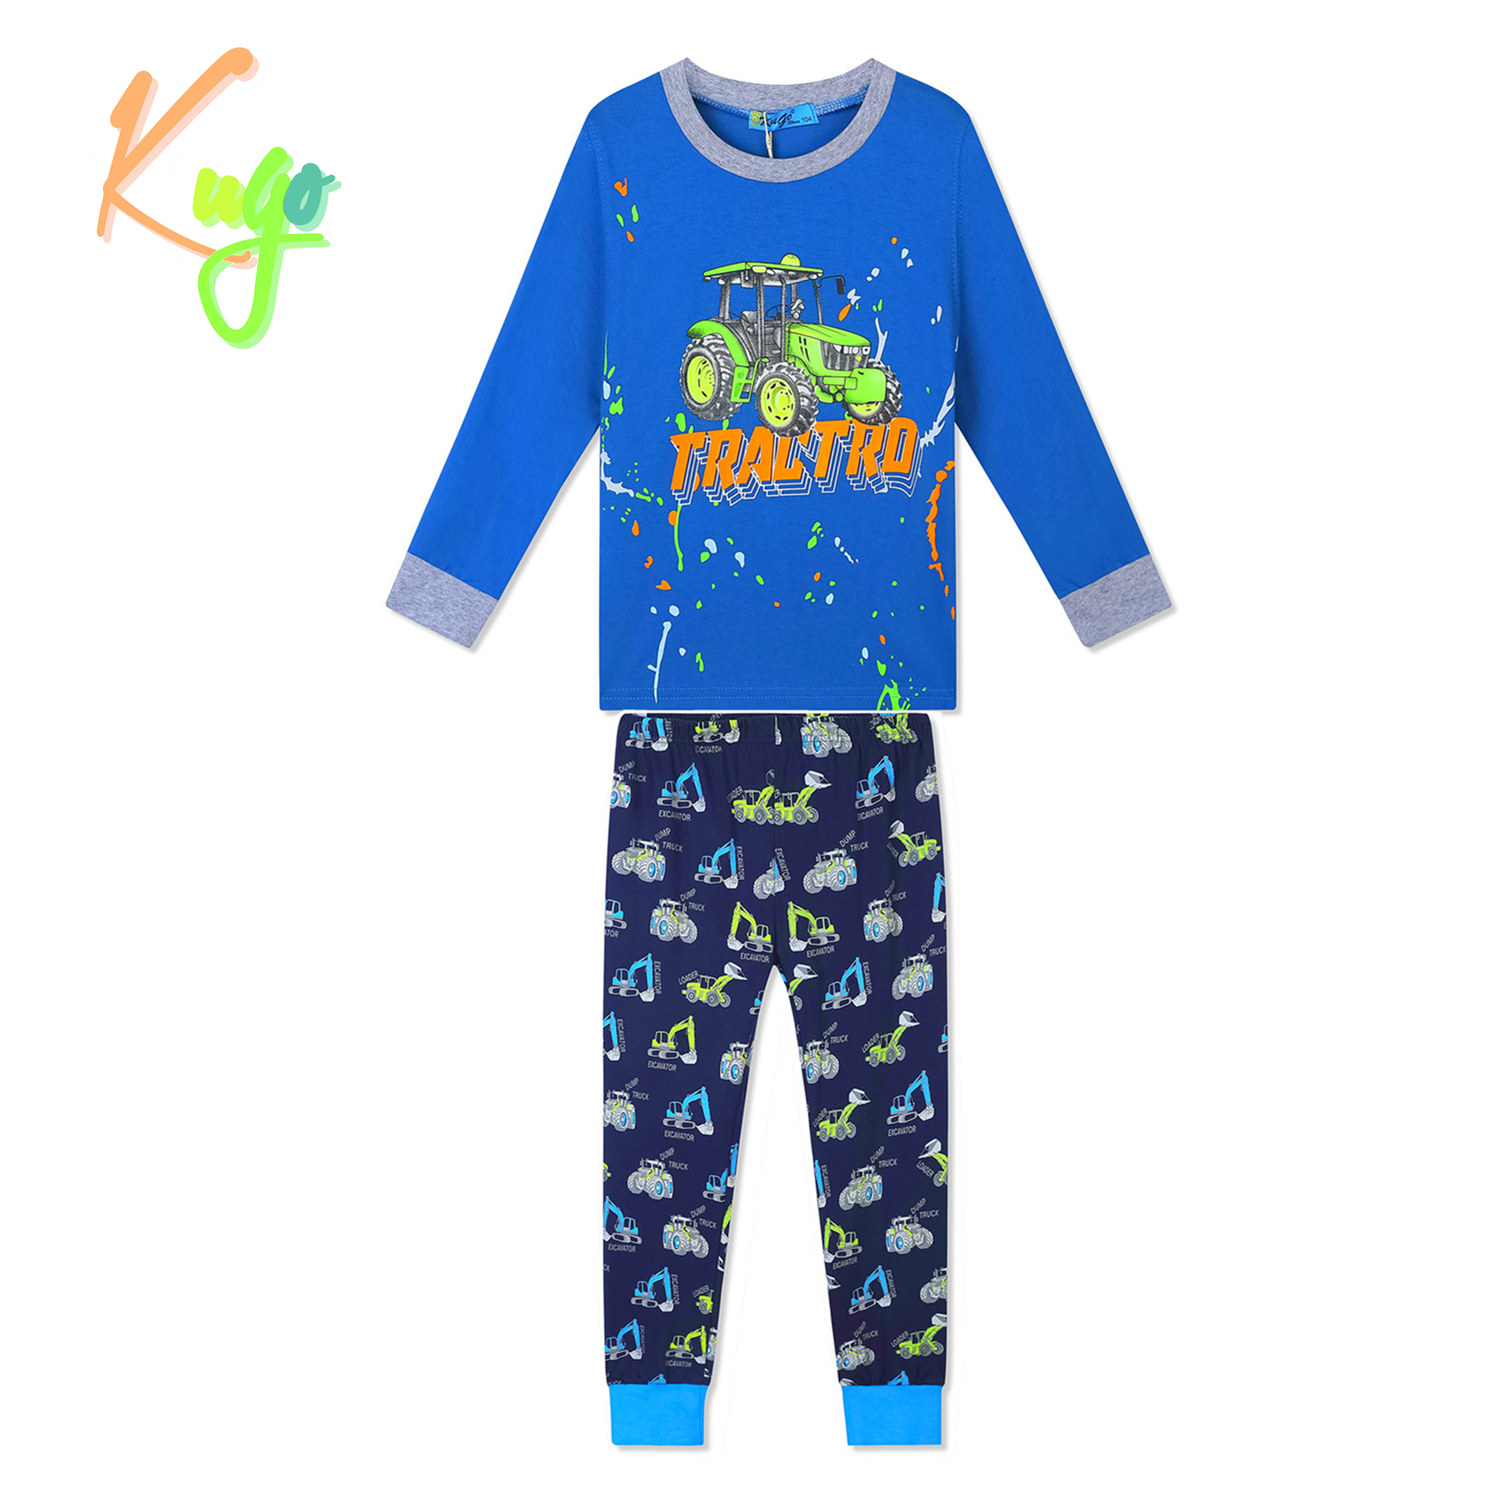 Chlapecké pyžamo - KUGO MP1336, tyrkysová / tmavě modrá Barva: Tyrkysová, Velikost: 116